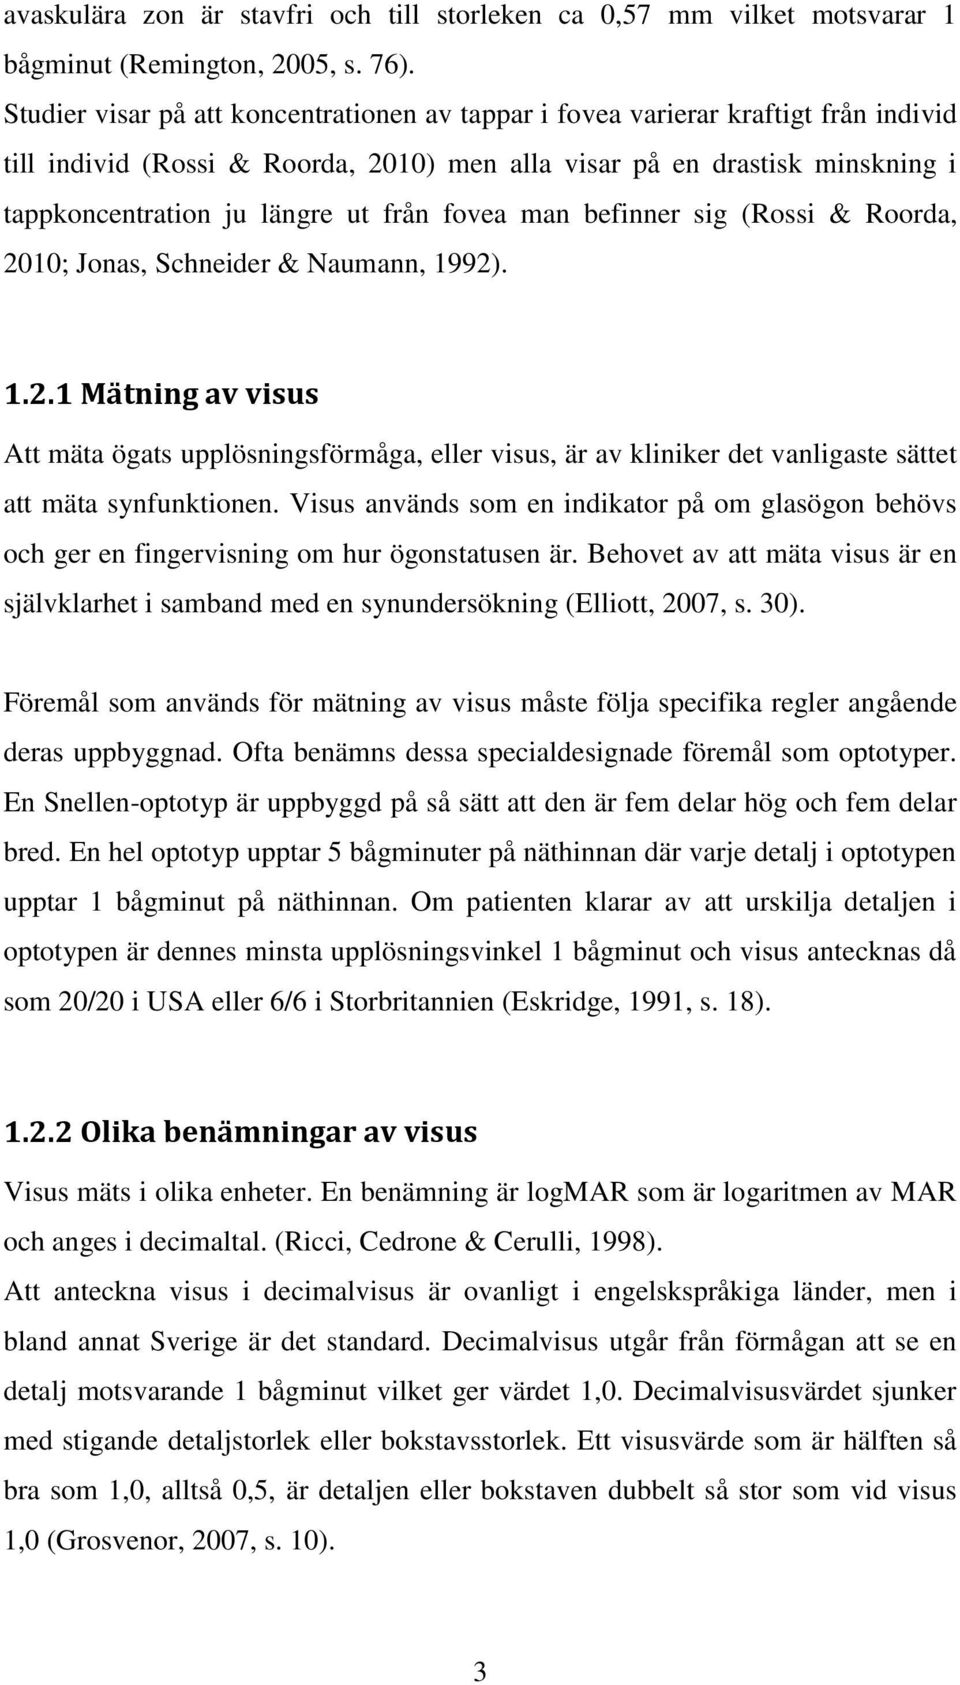 fovea man befinner sig (Rossi & Roorda, 2010; Jonas, Schneider & Naumann, 1992). 1.2.1 Mätning av visus Att mäta ögats upplösningsförmåga, eller visus, är av kliniker det vanligaste sättet att mäta synfunktionen.